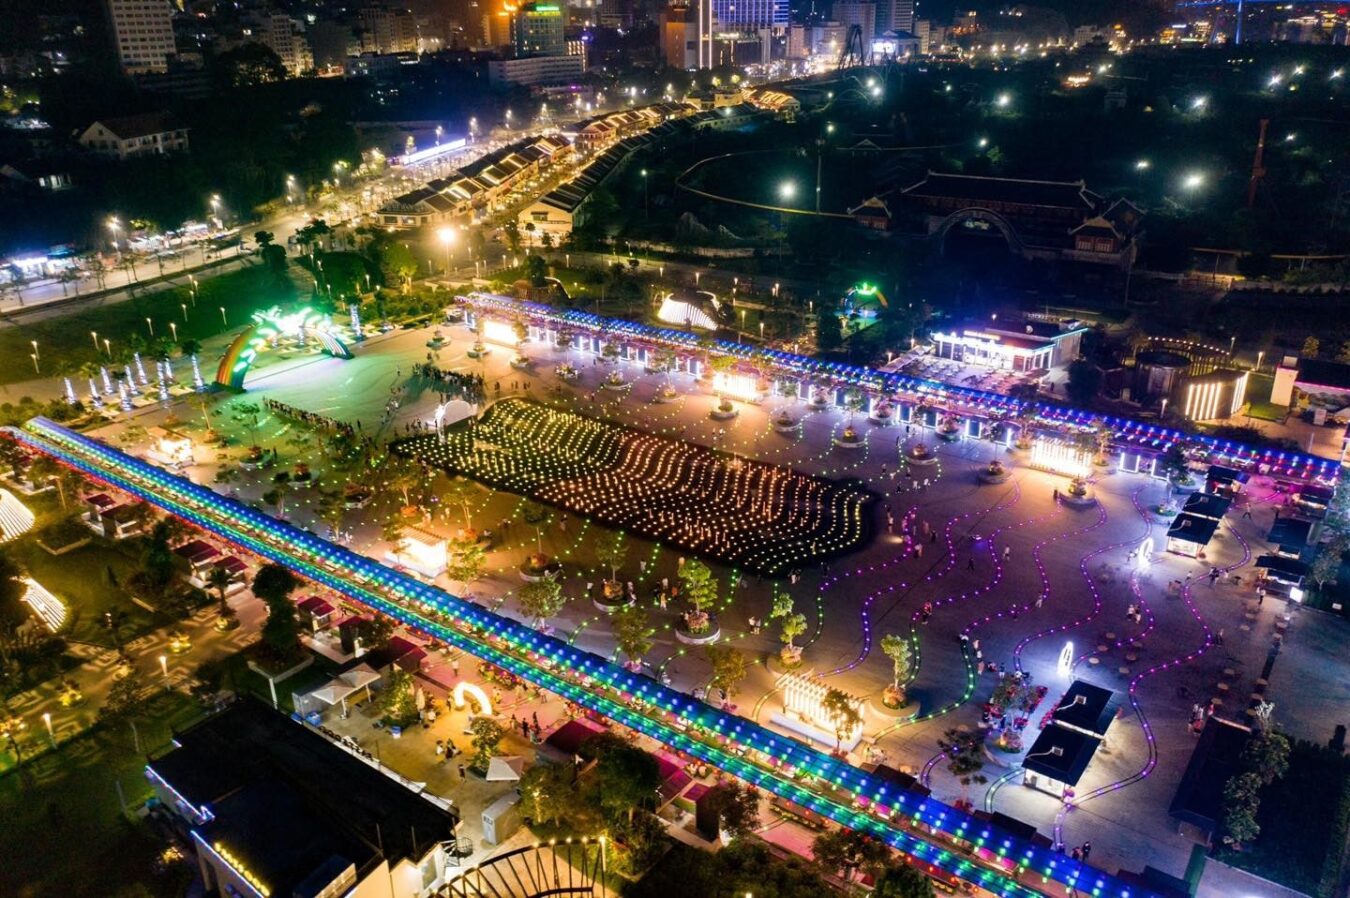 Quảng trường Sun Carnival – “Mặt trời” trên vịnh Hạ Long